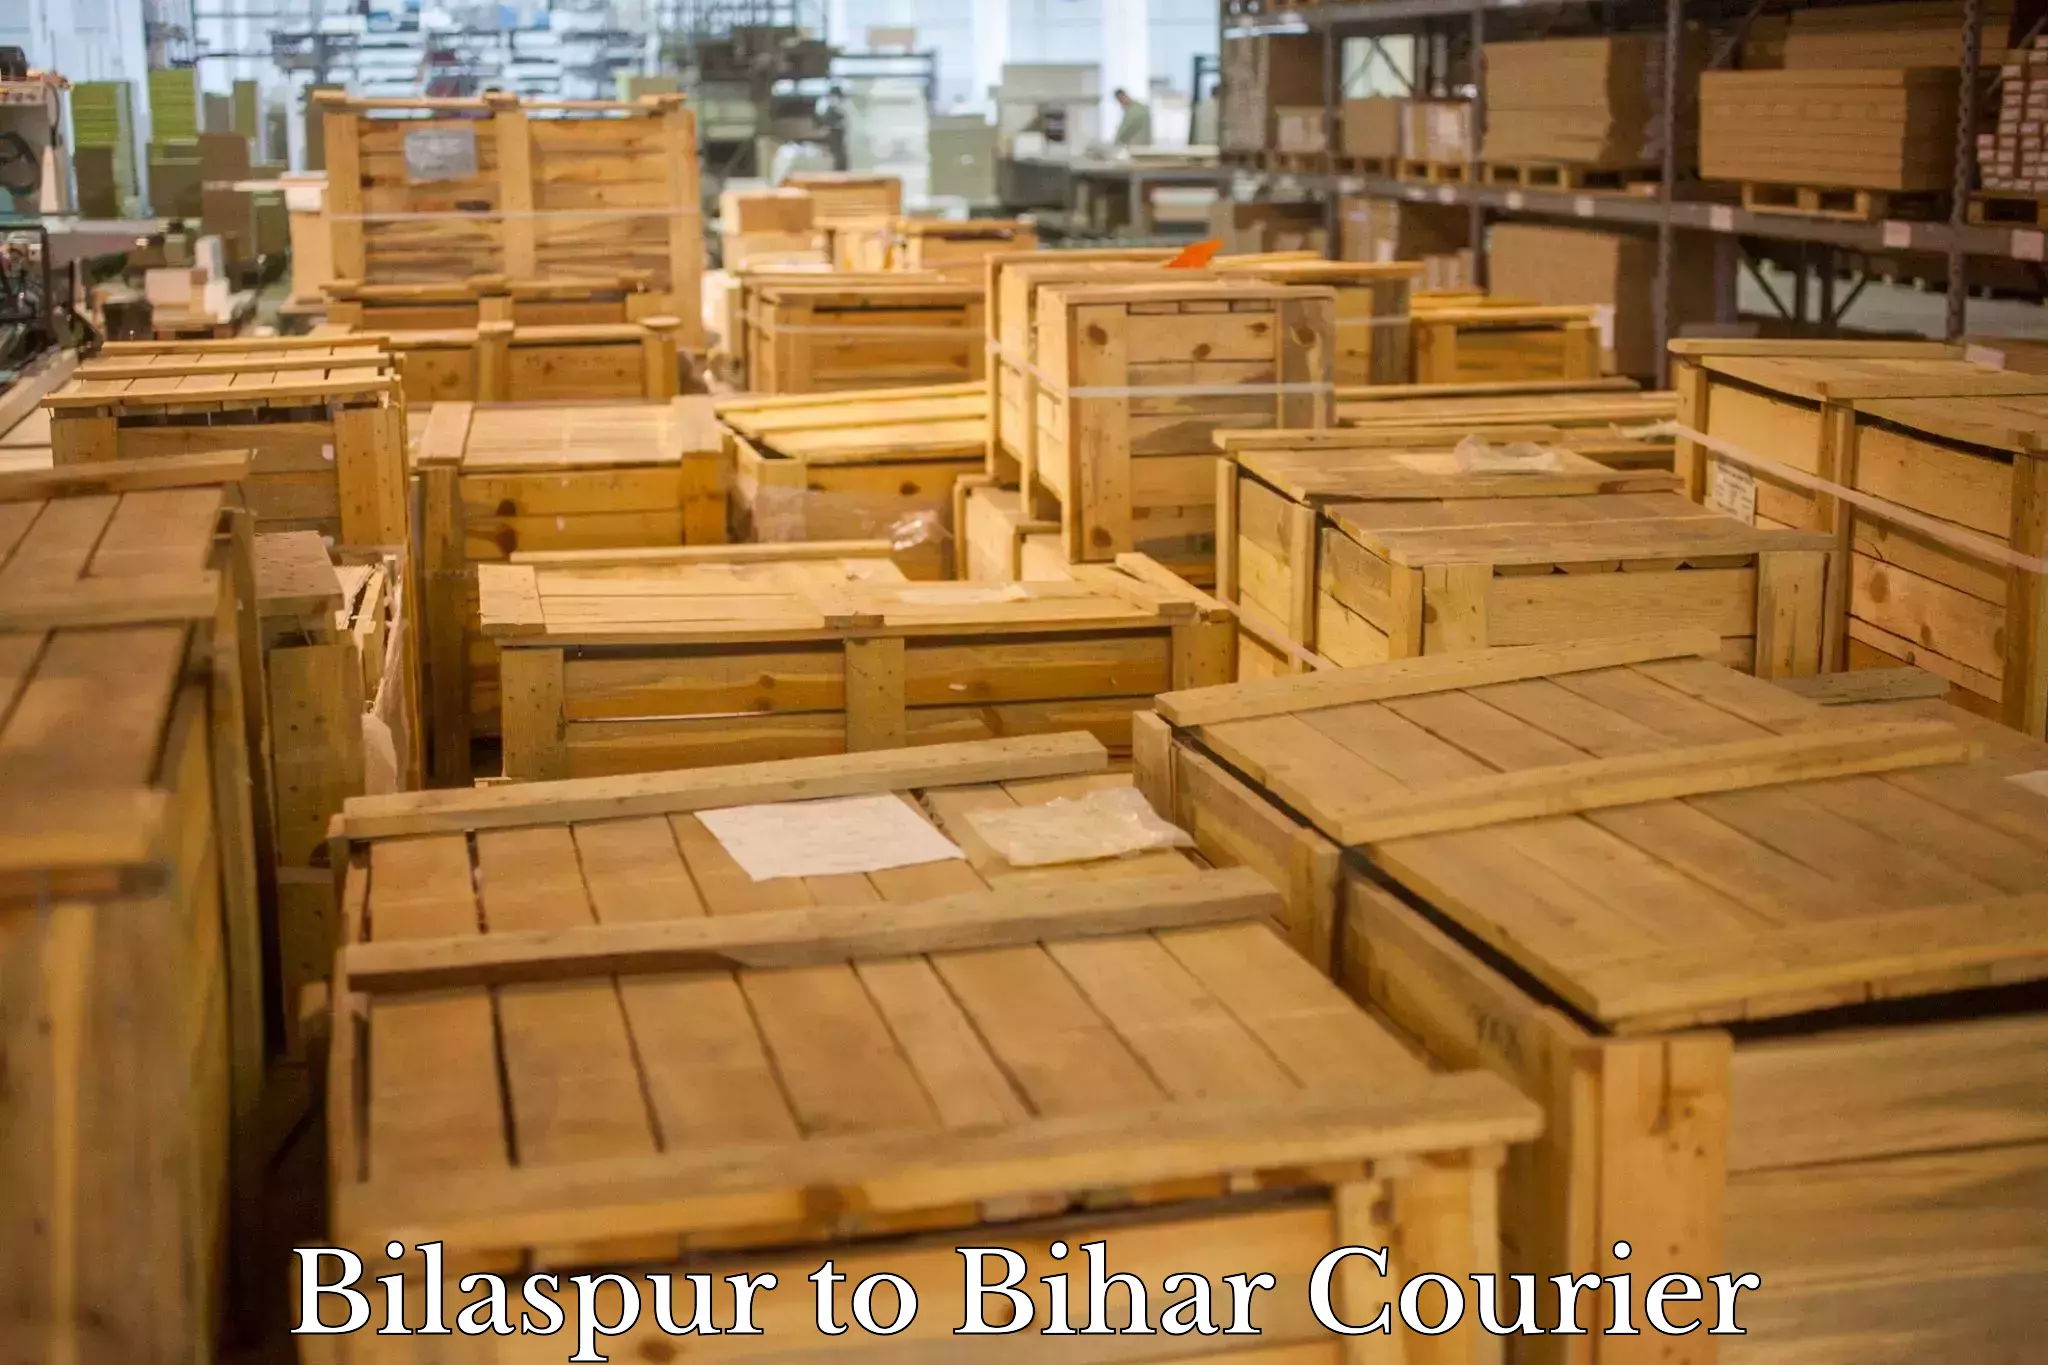 Efficient parcel service Bilaspur to Baniapur